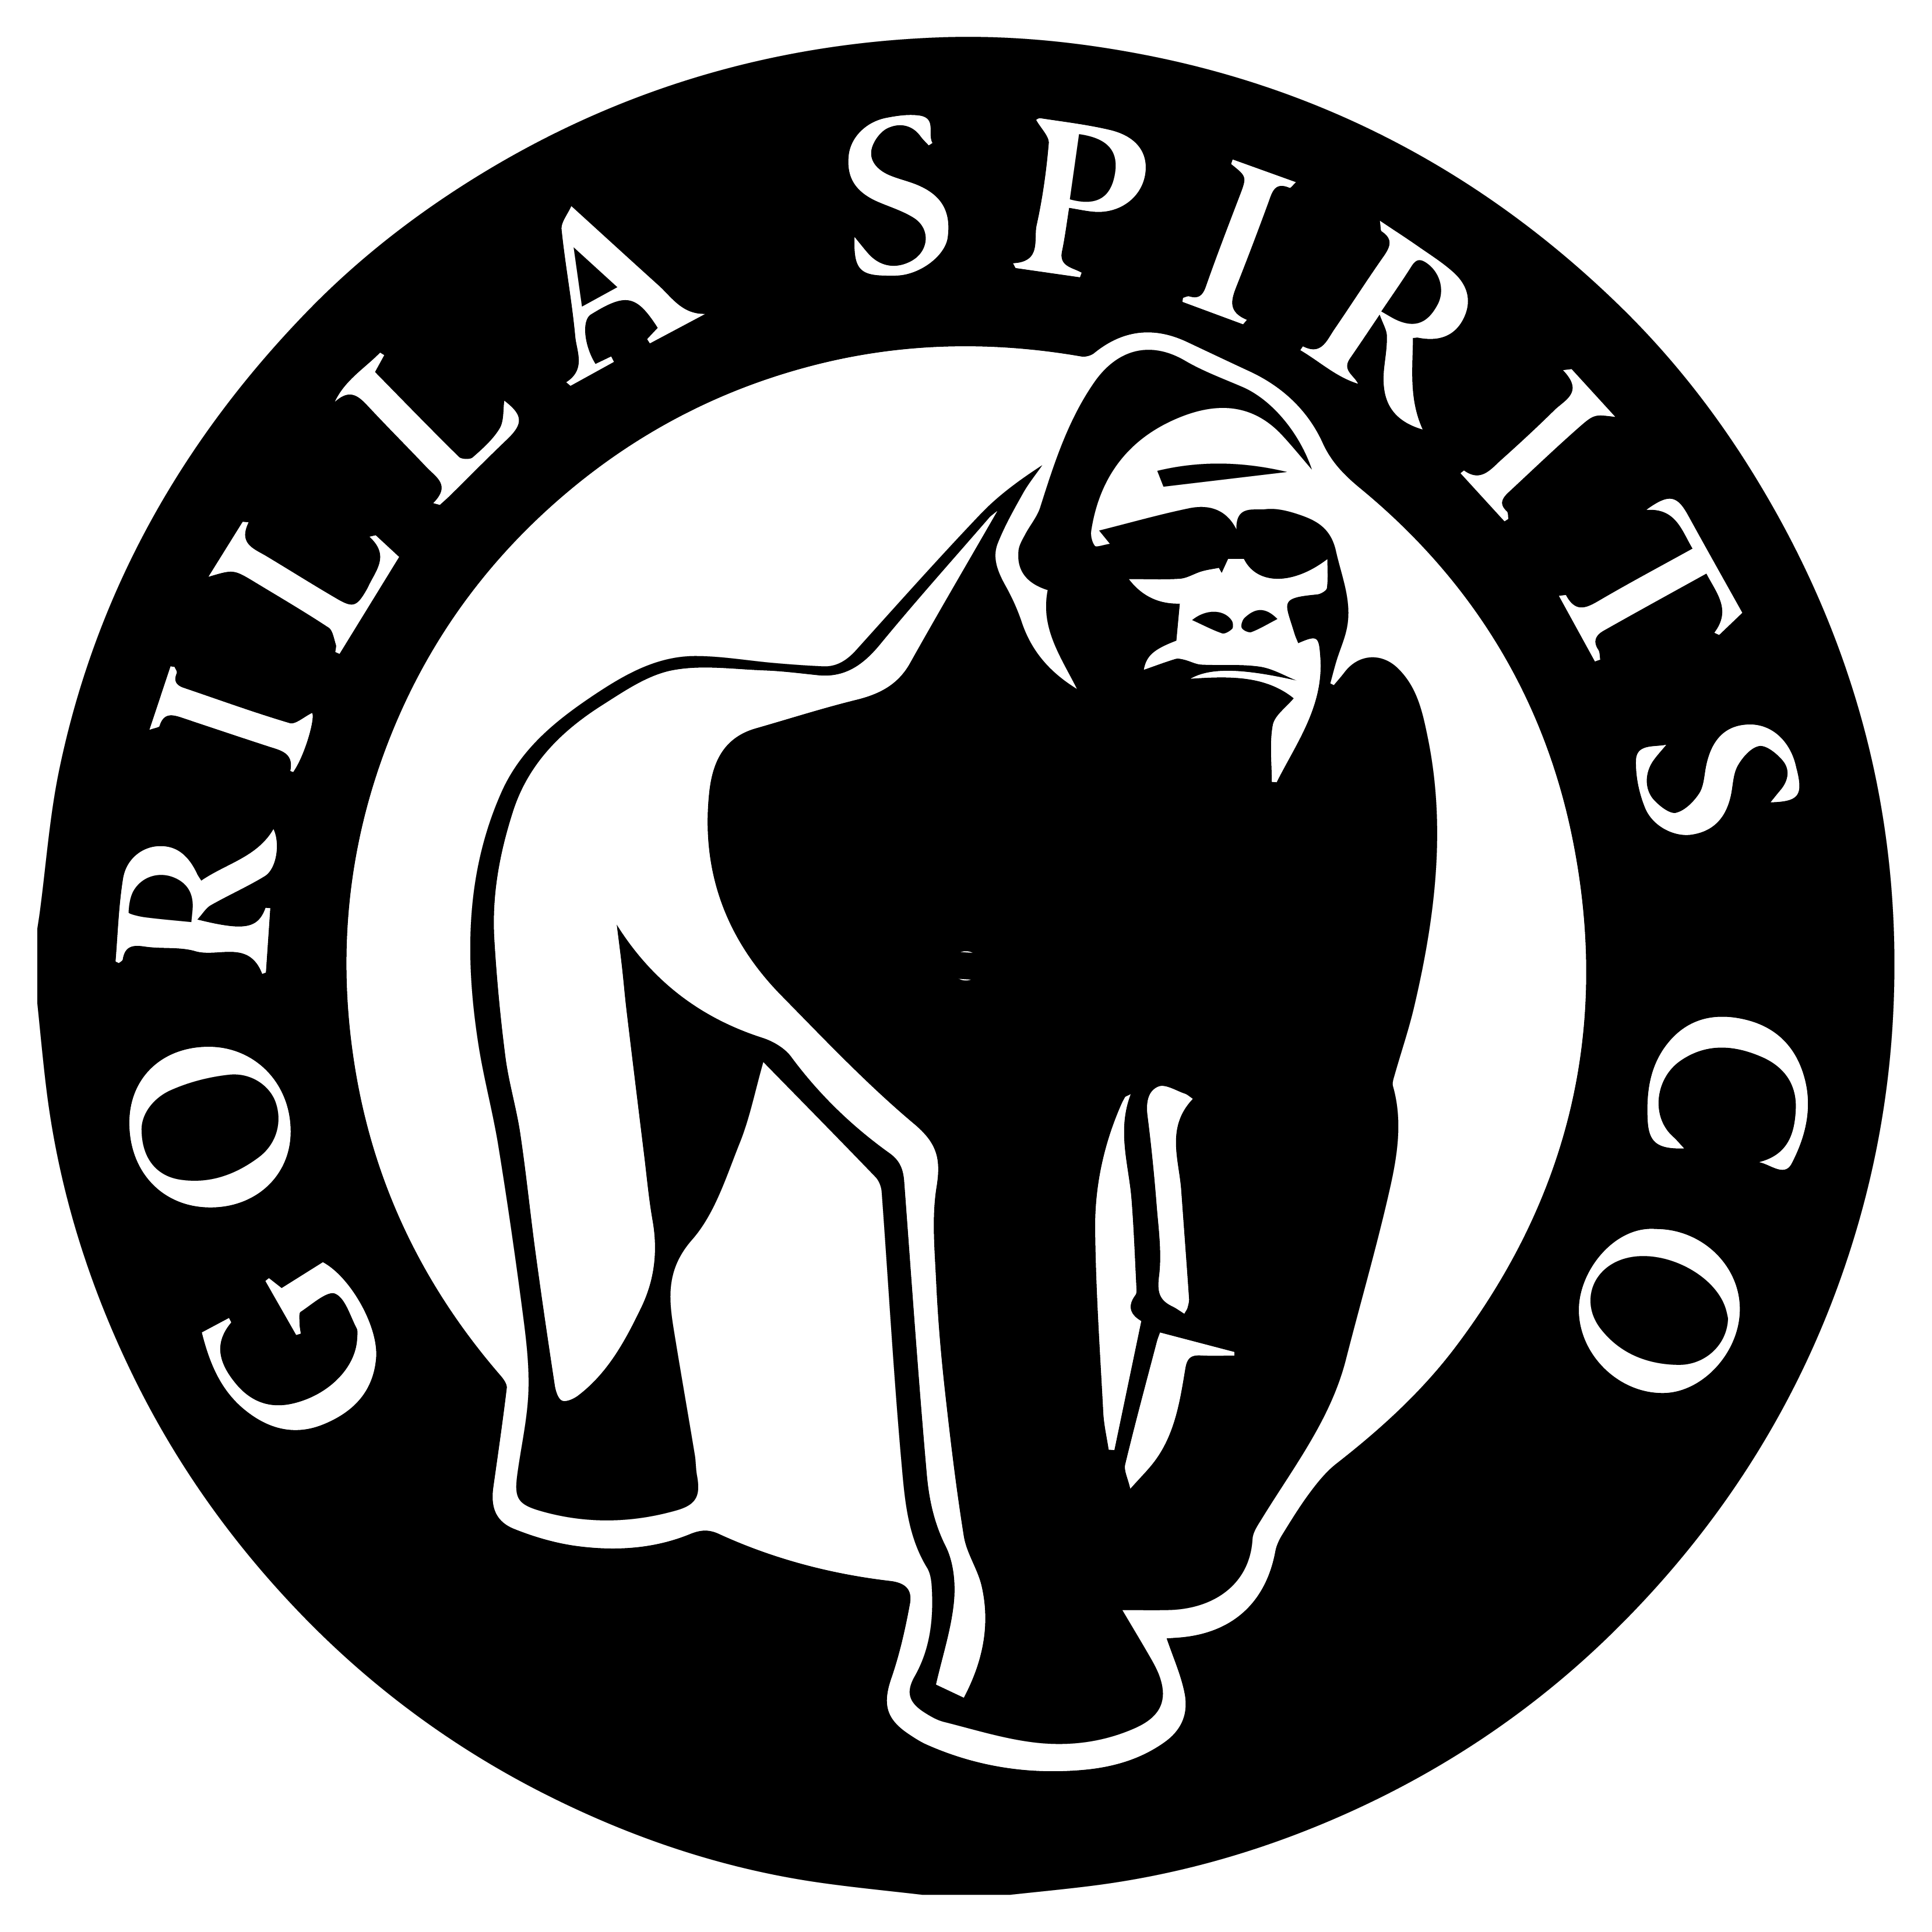 gorilla clipart strong